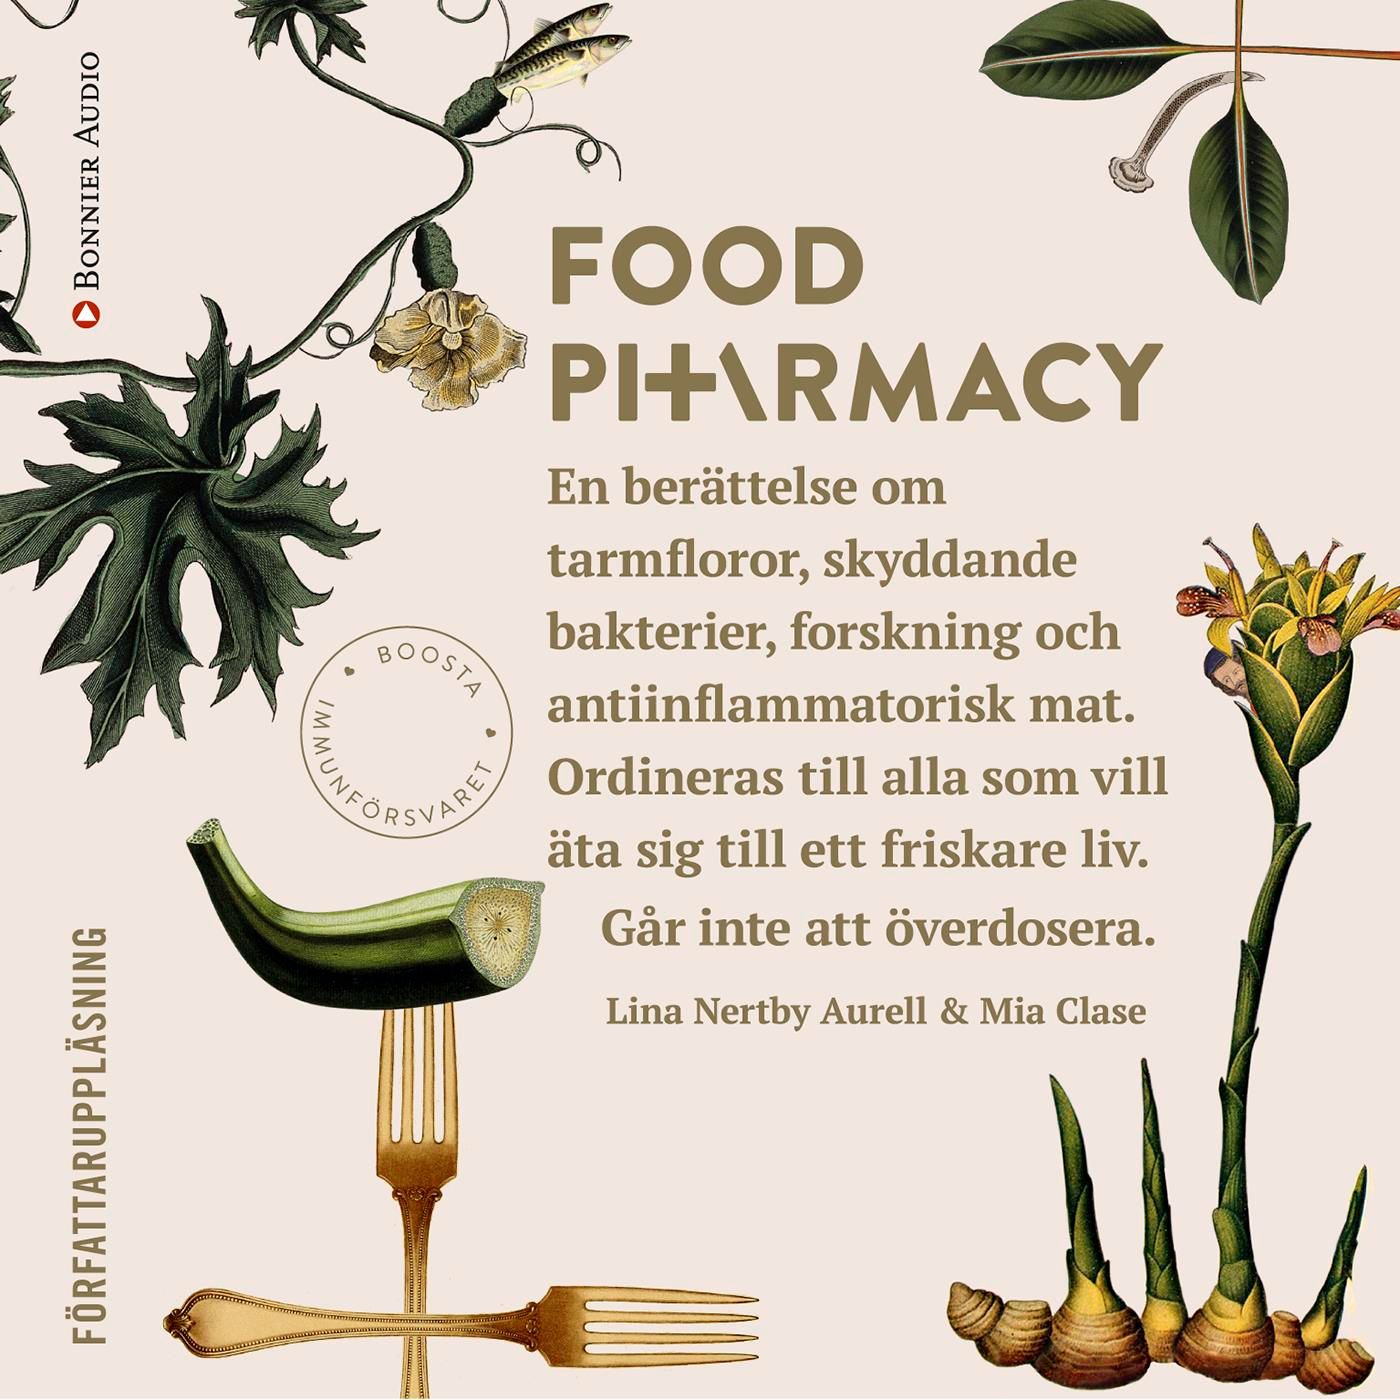 Food Pharmacy : en berättelse om tarmfloror, snälla bakterier, forskning och antiinflammatorisk mat, audiobook by Mia Clase, Lina Nertby Aurell